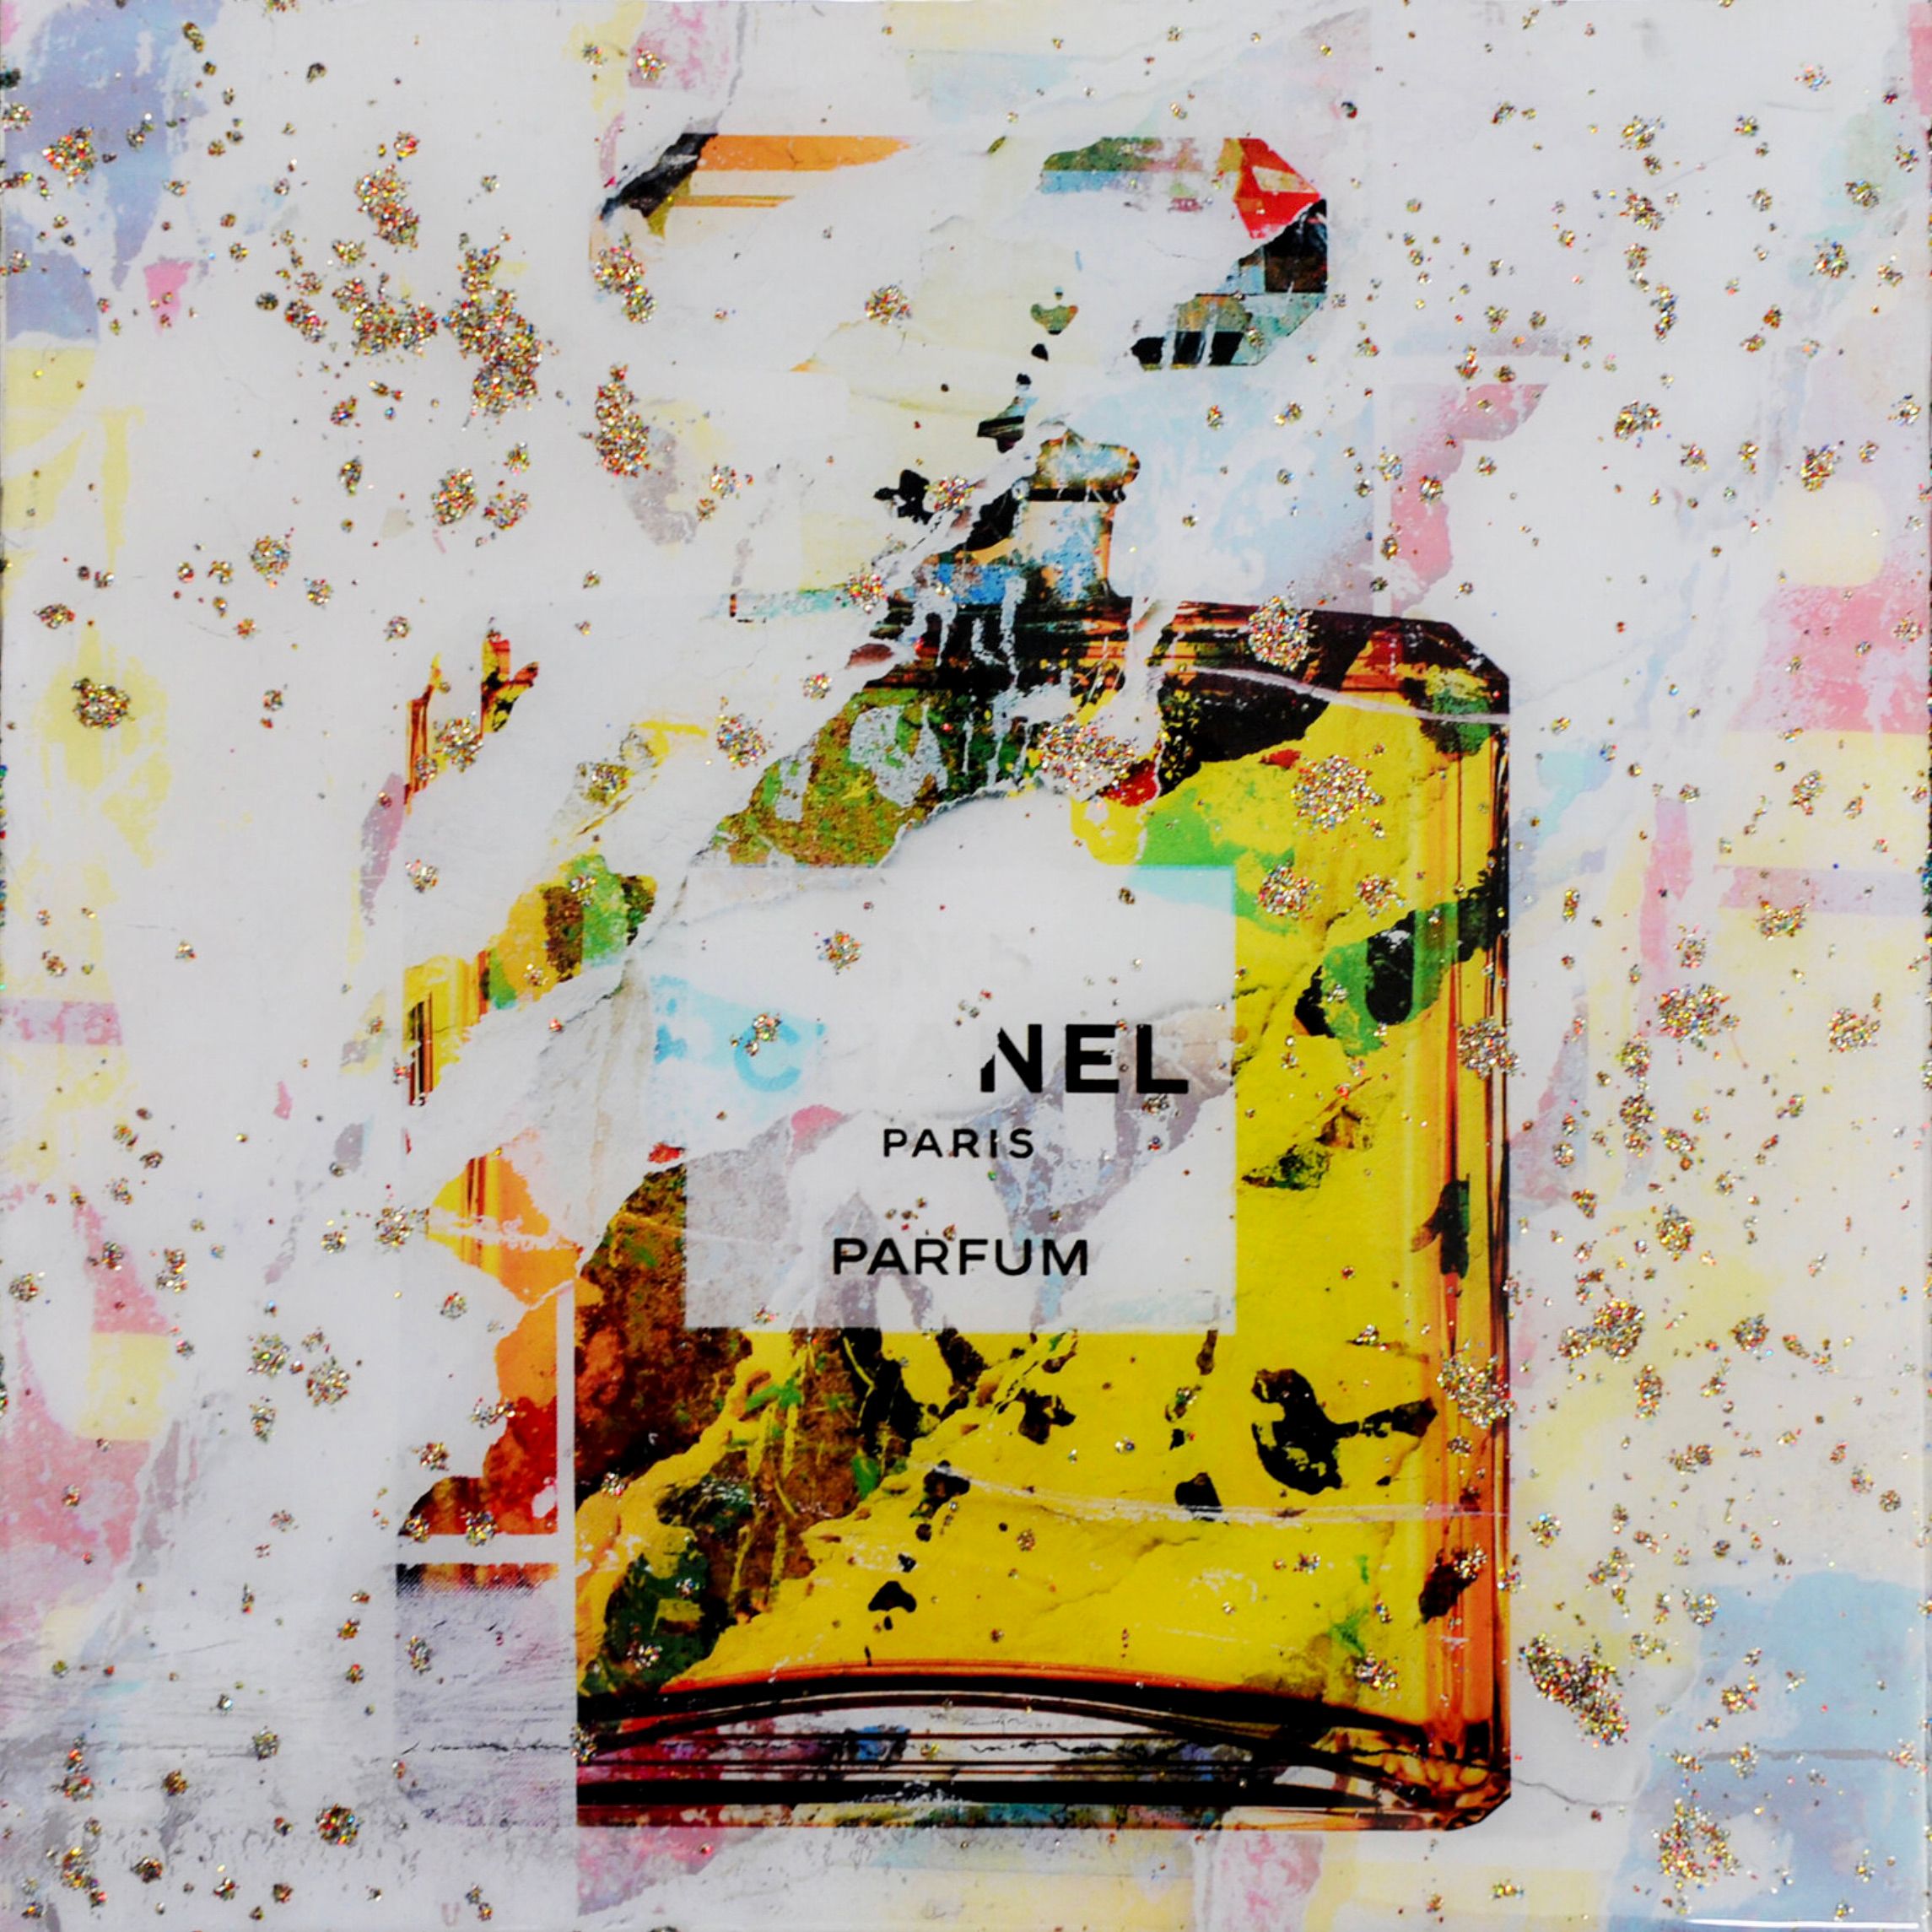 La "Chanel No.5 small resin edition" di Karin Vermeer è una combinazione ed elaborazione digitale di fotografie, dipinti e collage in nuove opere d'arte pop-art a colori.